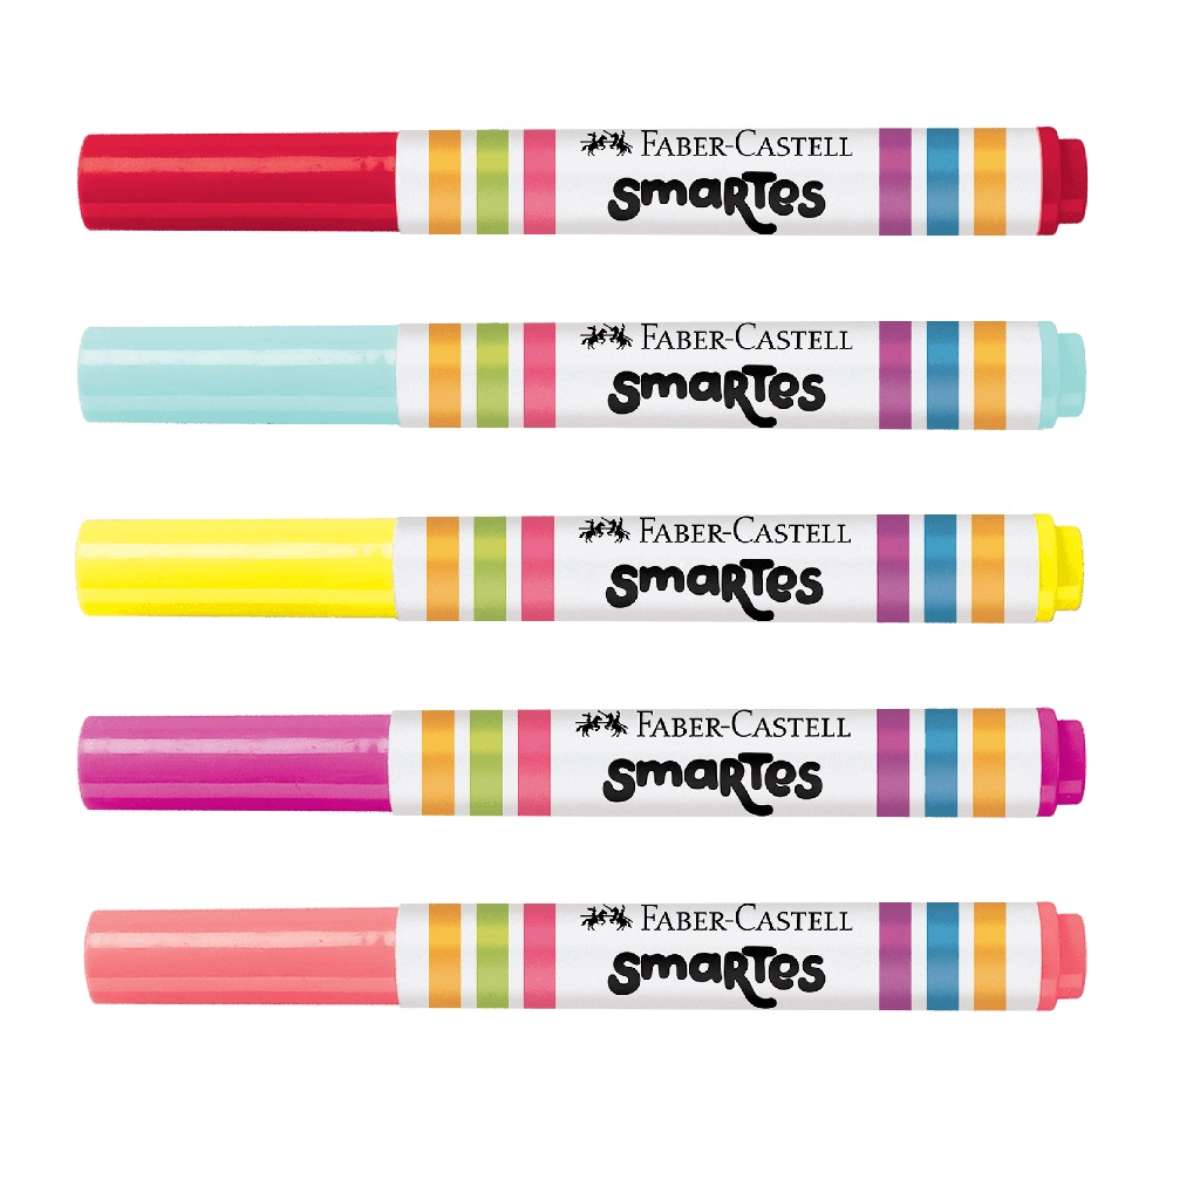 140 ideias de Desenhos para colorir  desenhos para colorir, colorir,  desenhos